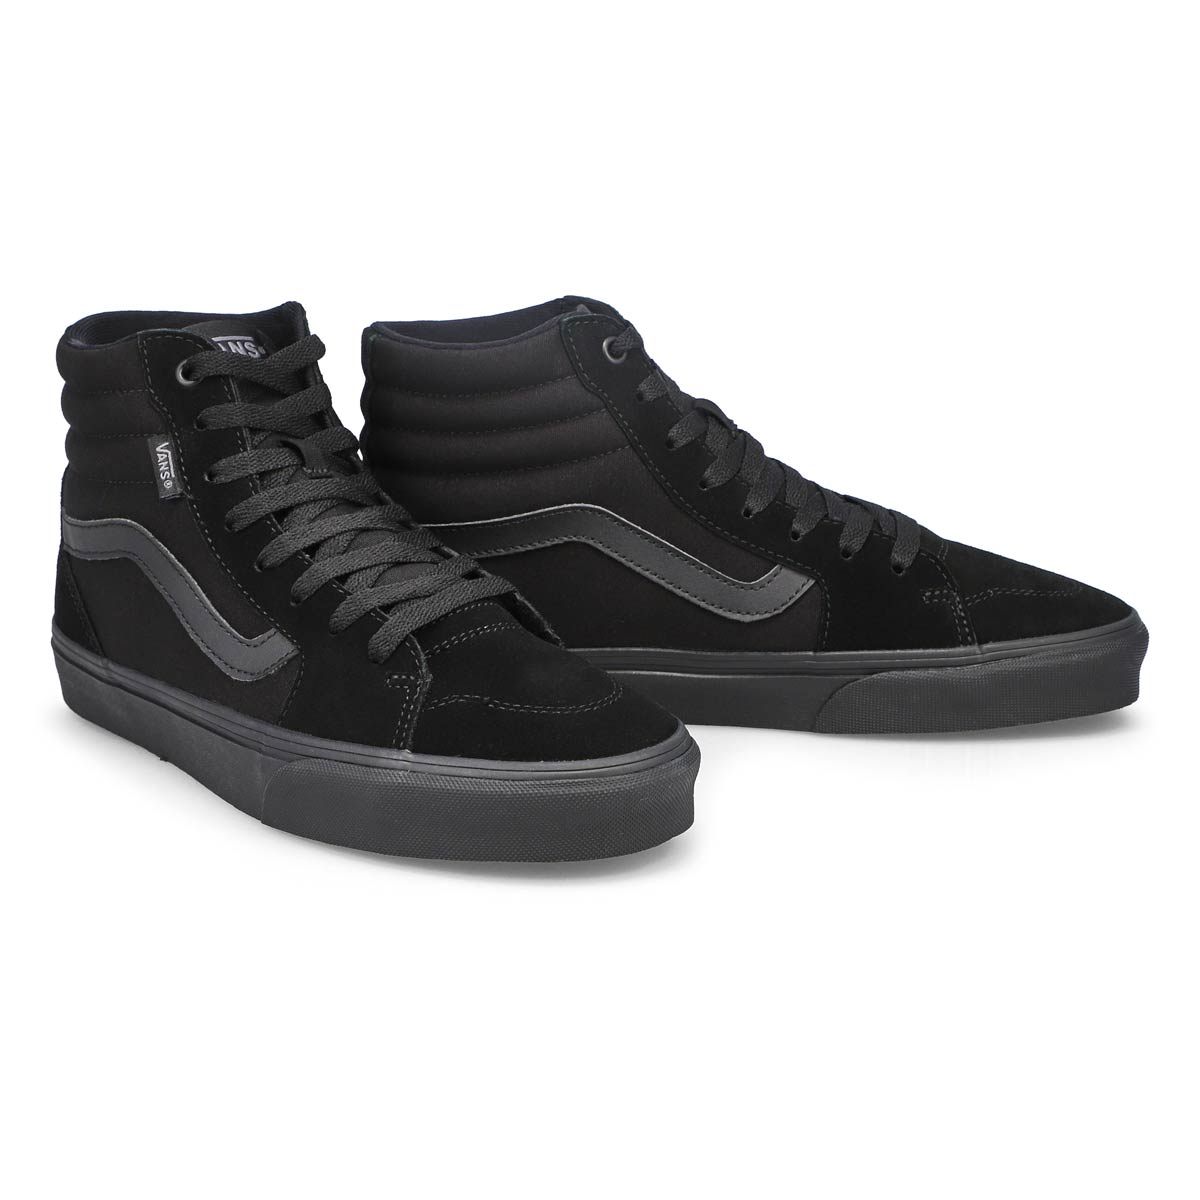 Men's Filmore Hi Top Sneaker - Black/Black